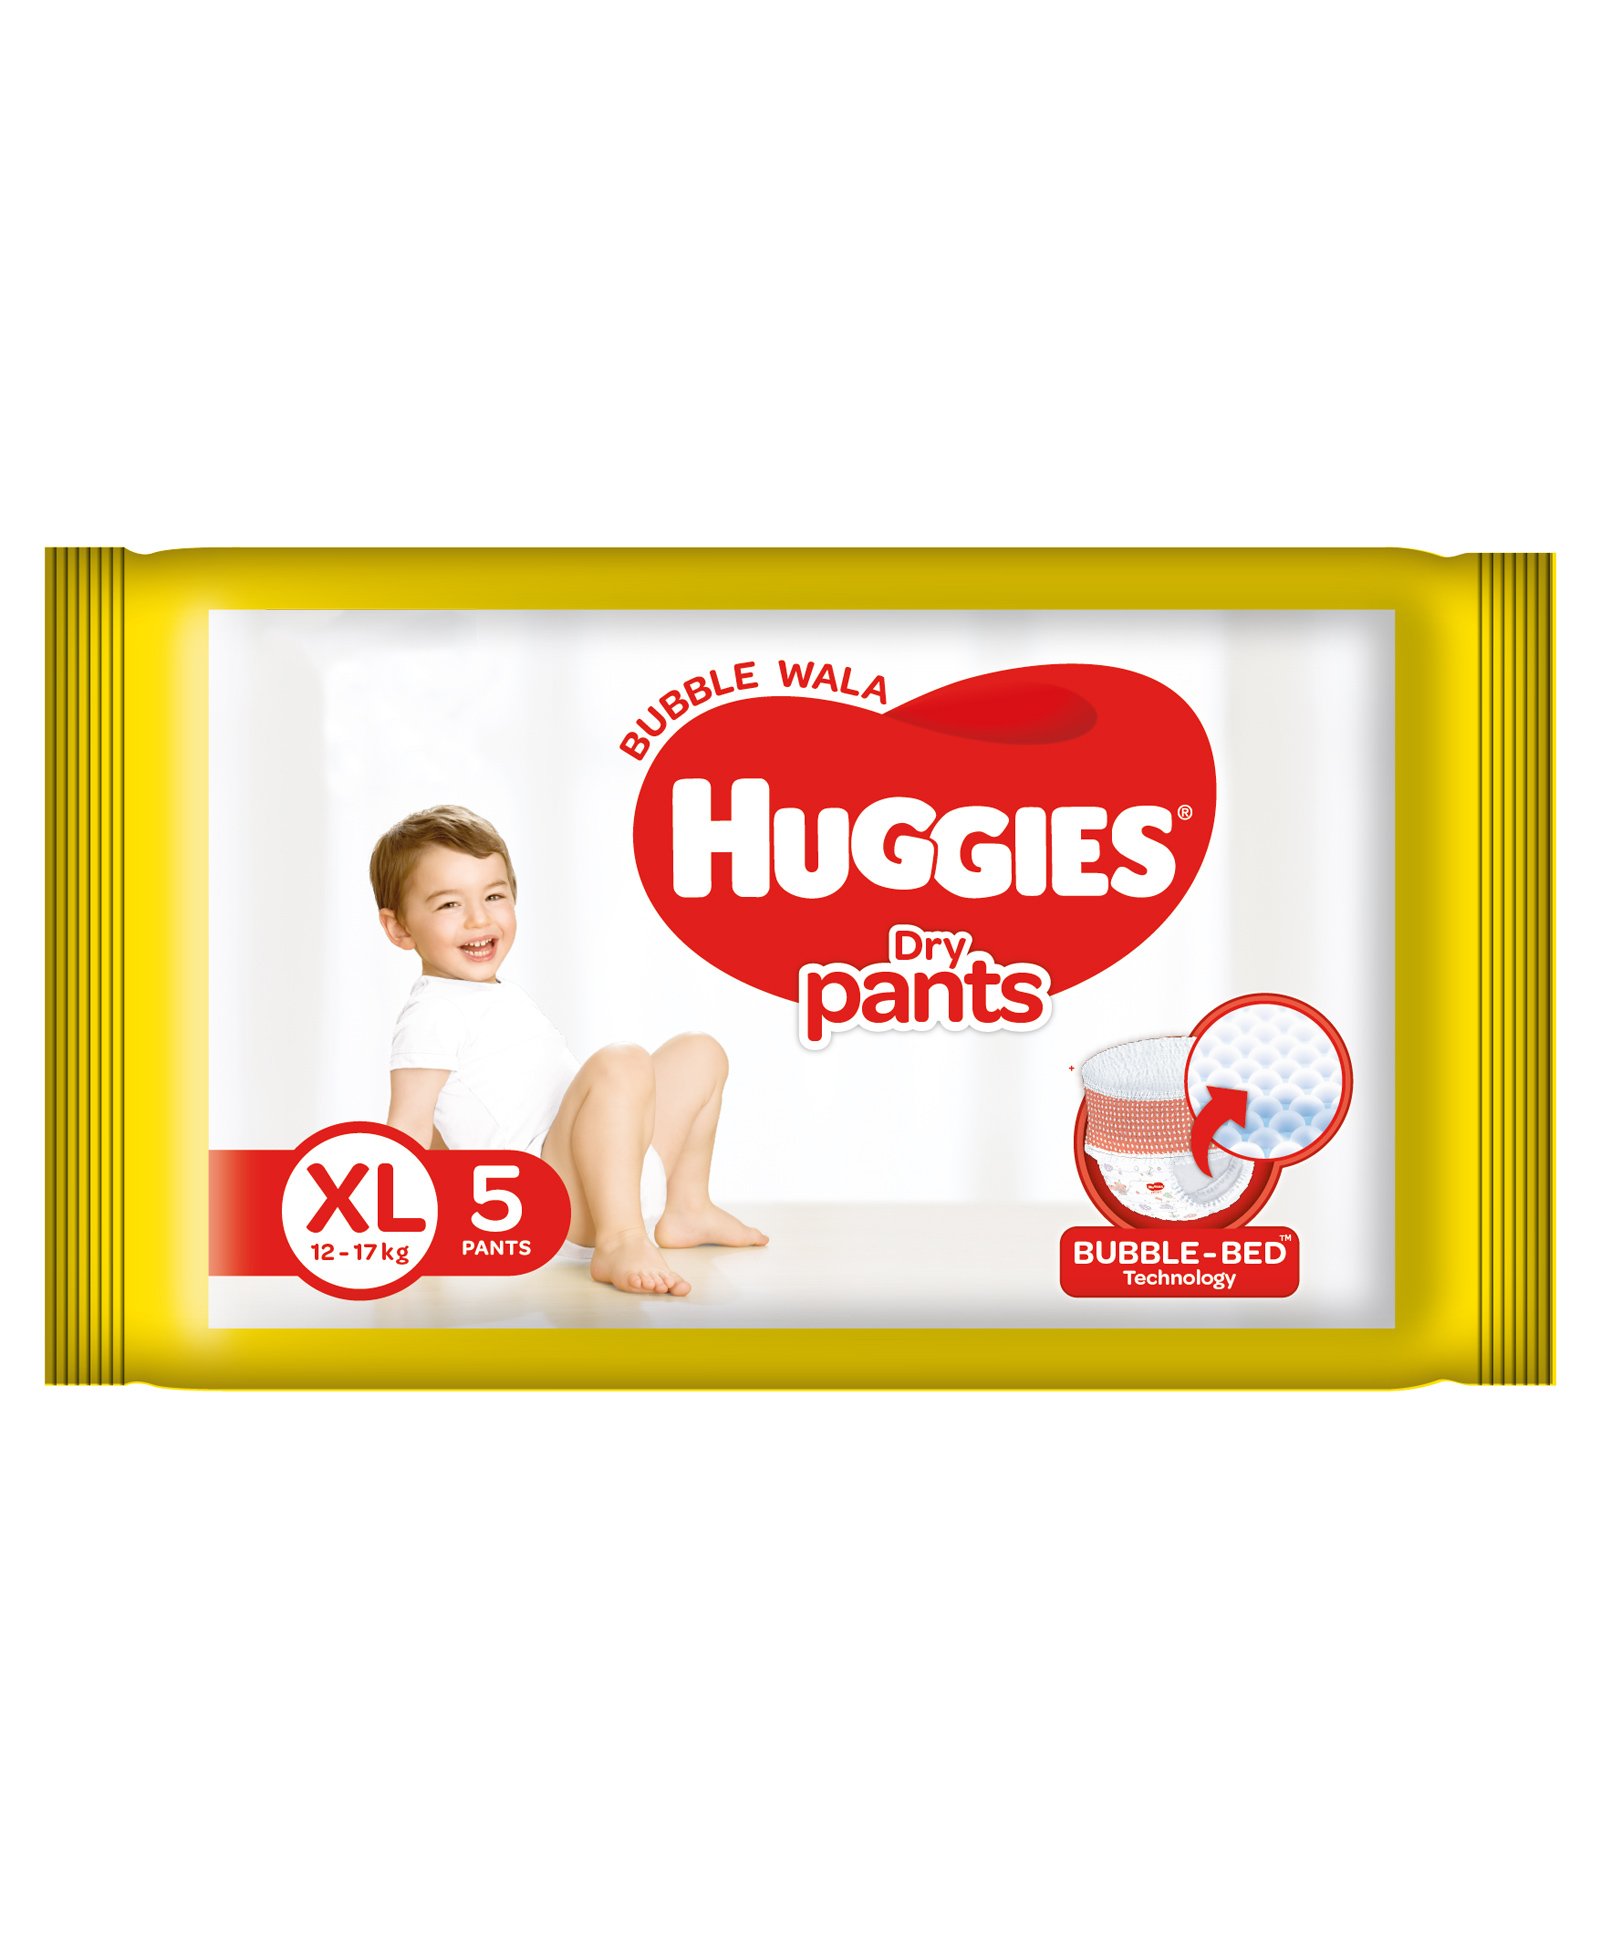 Huggies Dry Pants XL 12-17 kg 5 PANTS MRP 99/-